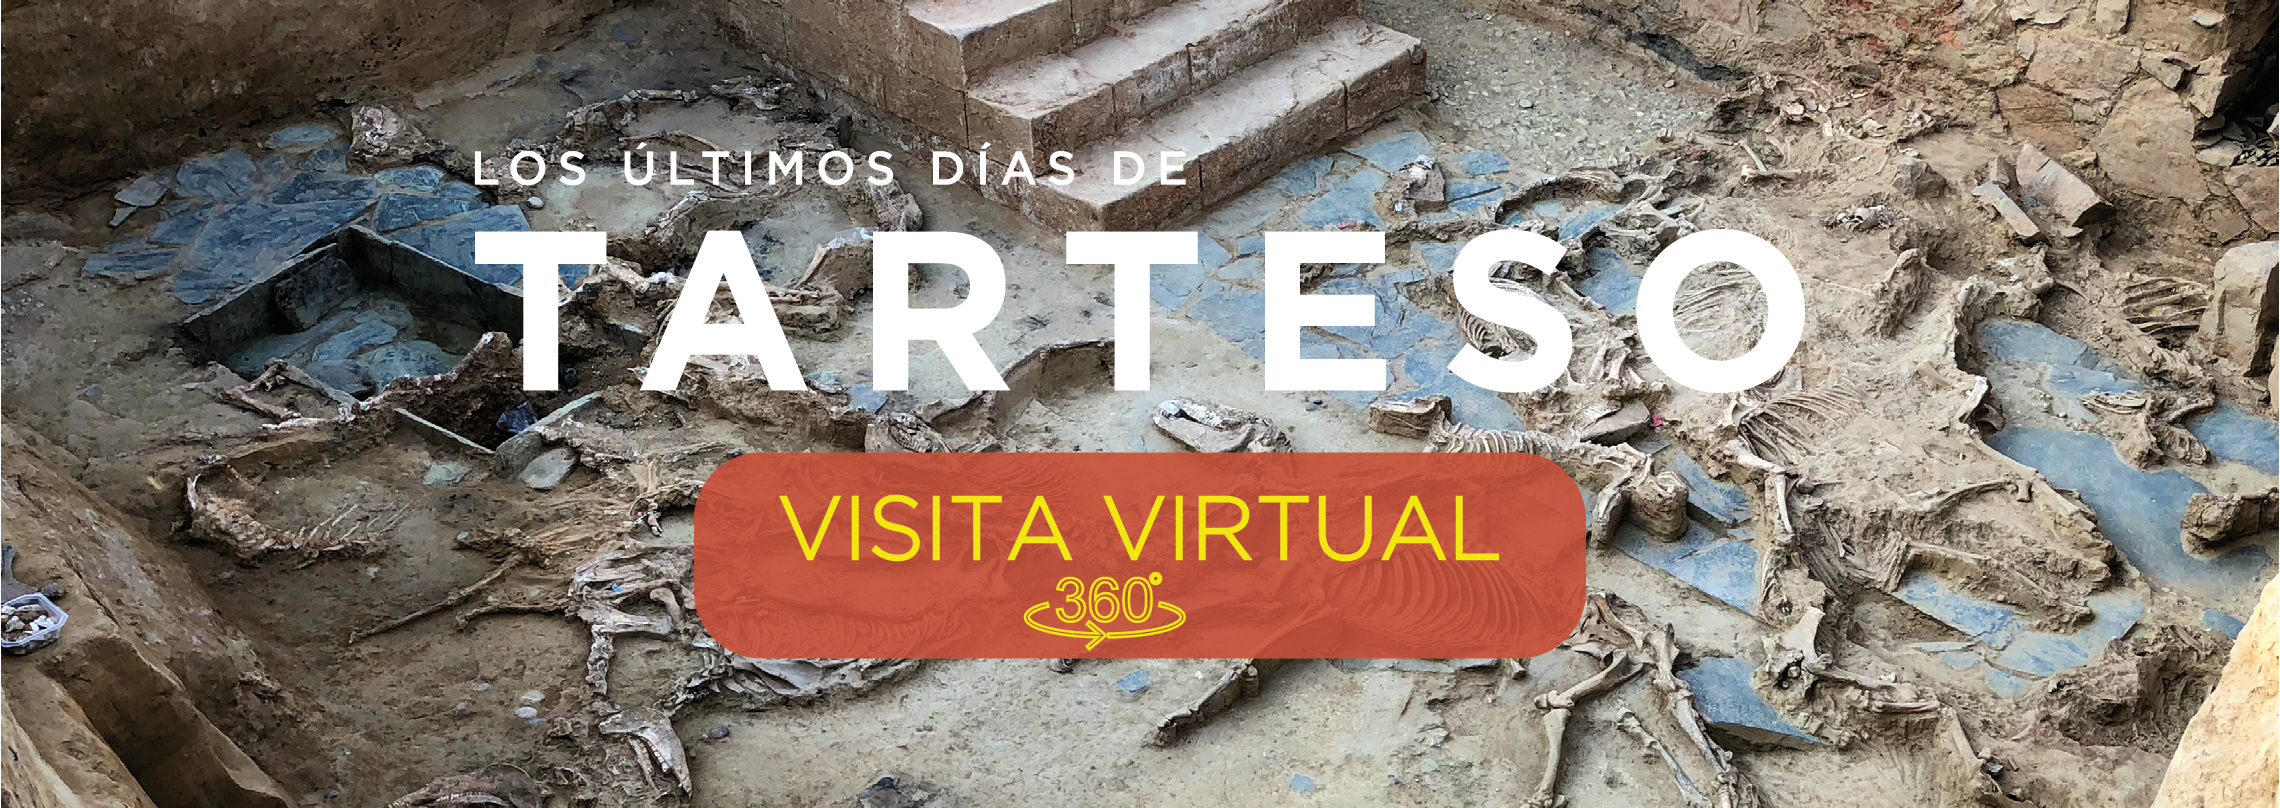 Banner acceso a la visita virtual de Los últimos días de Tarteso